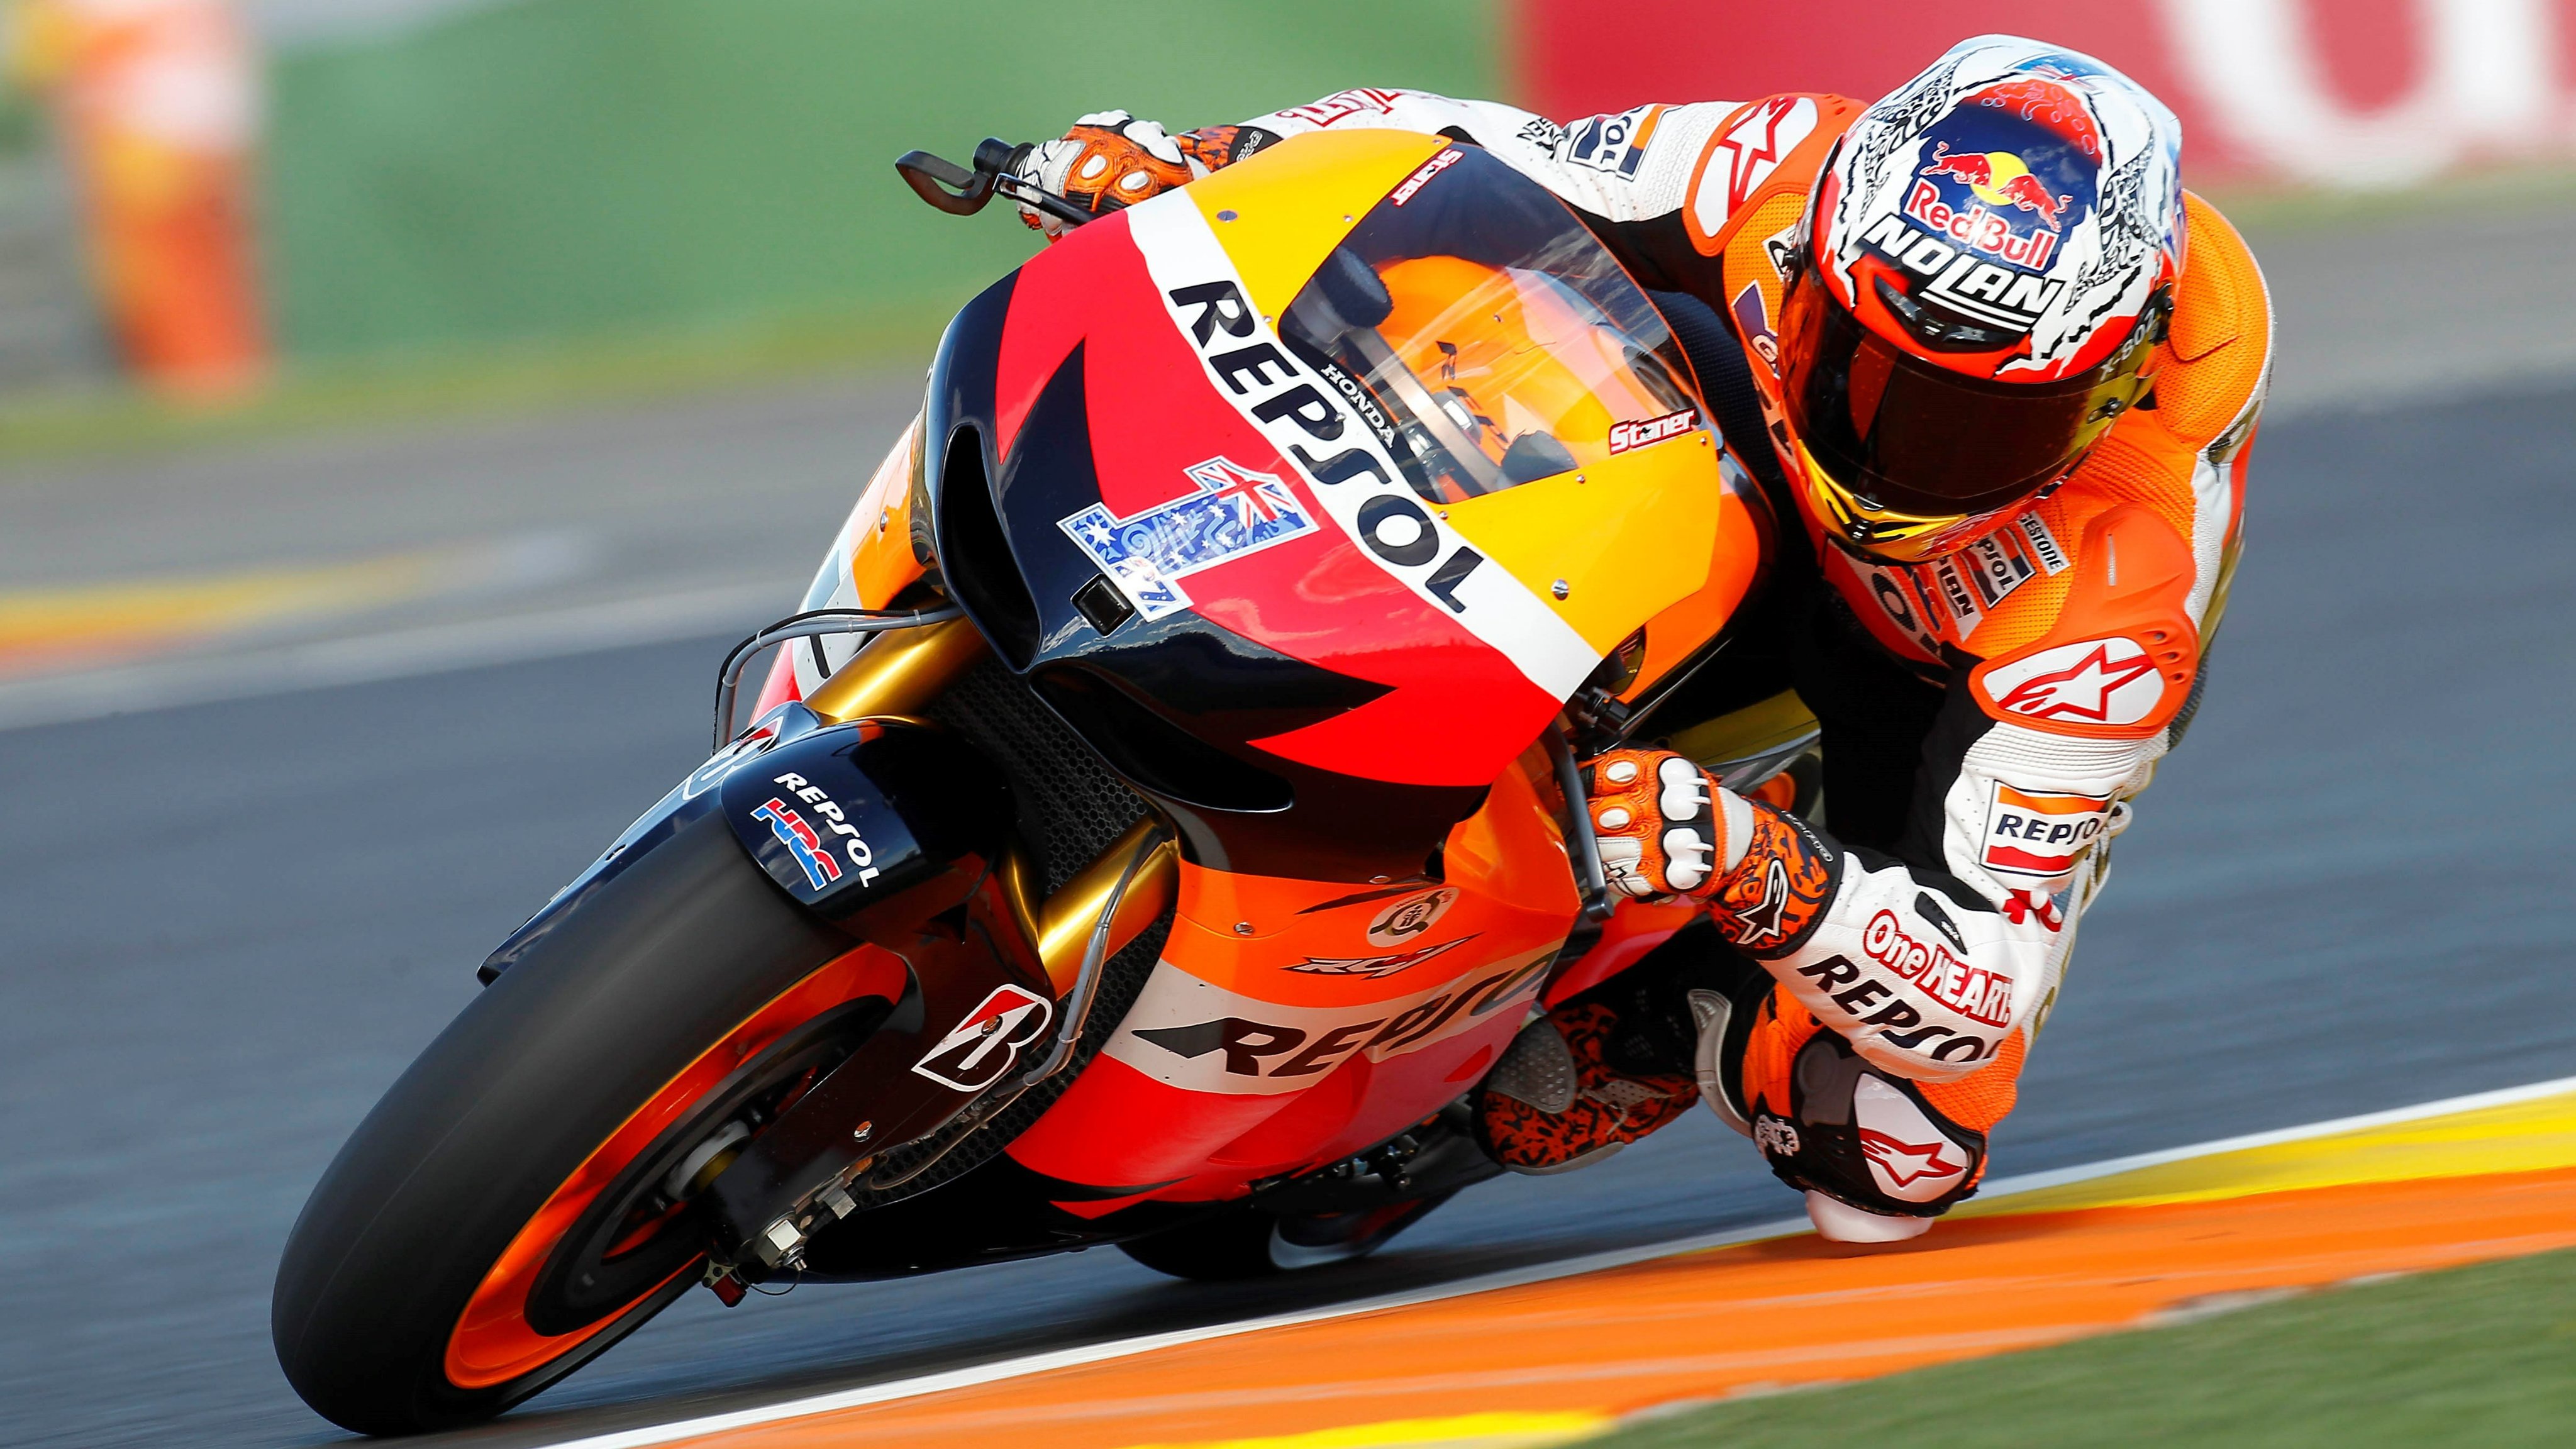 Casey Stoner Salahkan Dorna, Aturan MotoGP Bikin Honda Tidak Kompetitif!